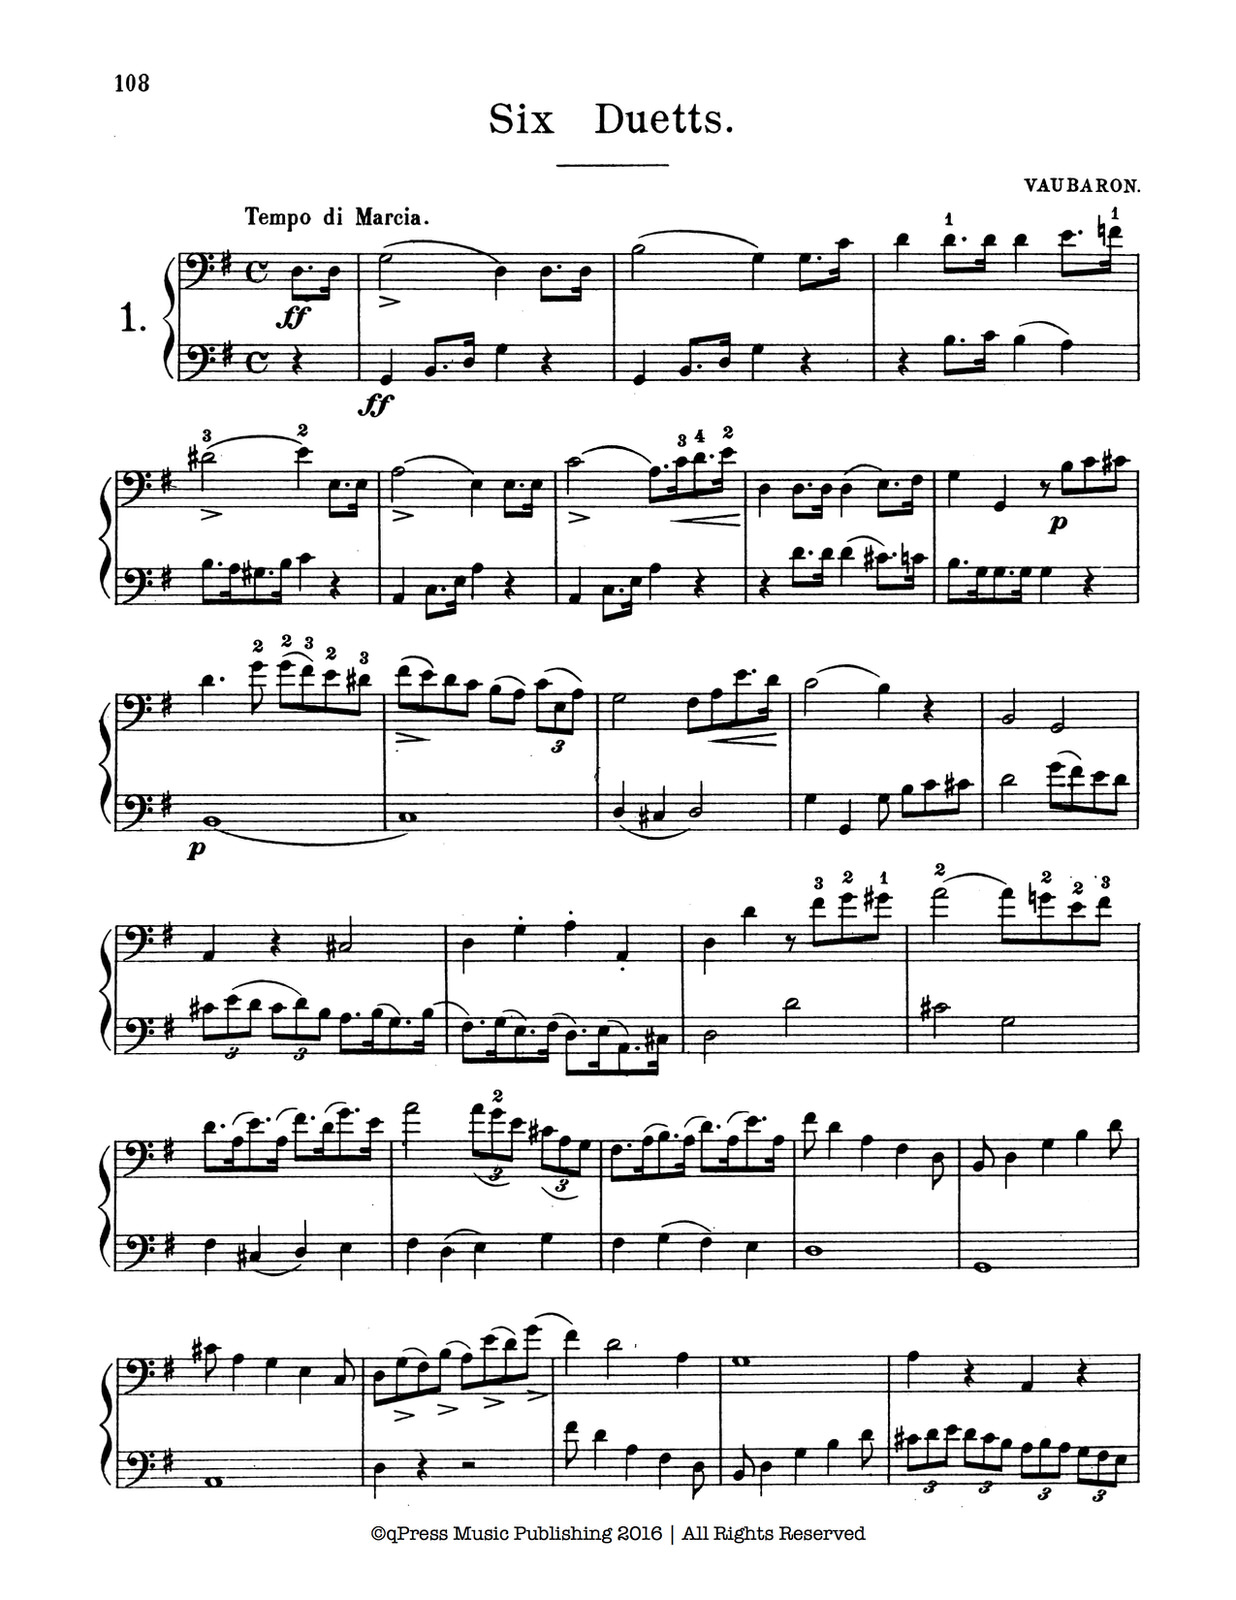 Bonnissaeu's Complete Method for Bb Tenor Slide Trombone by Bonnisseau ...